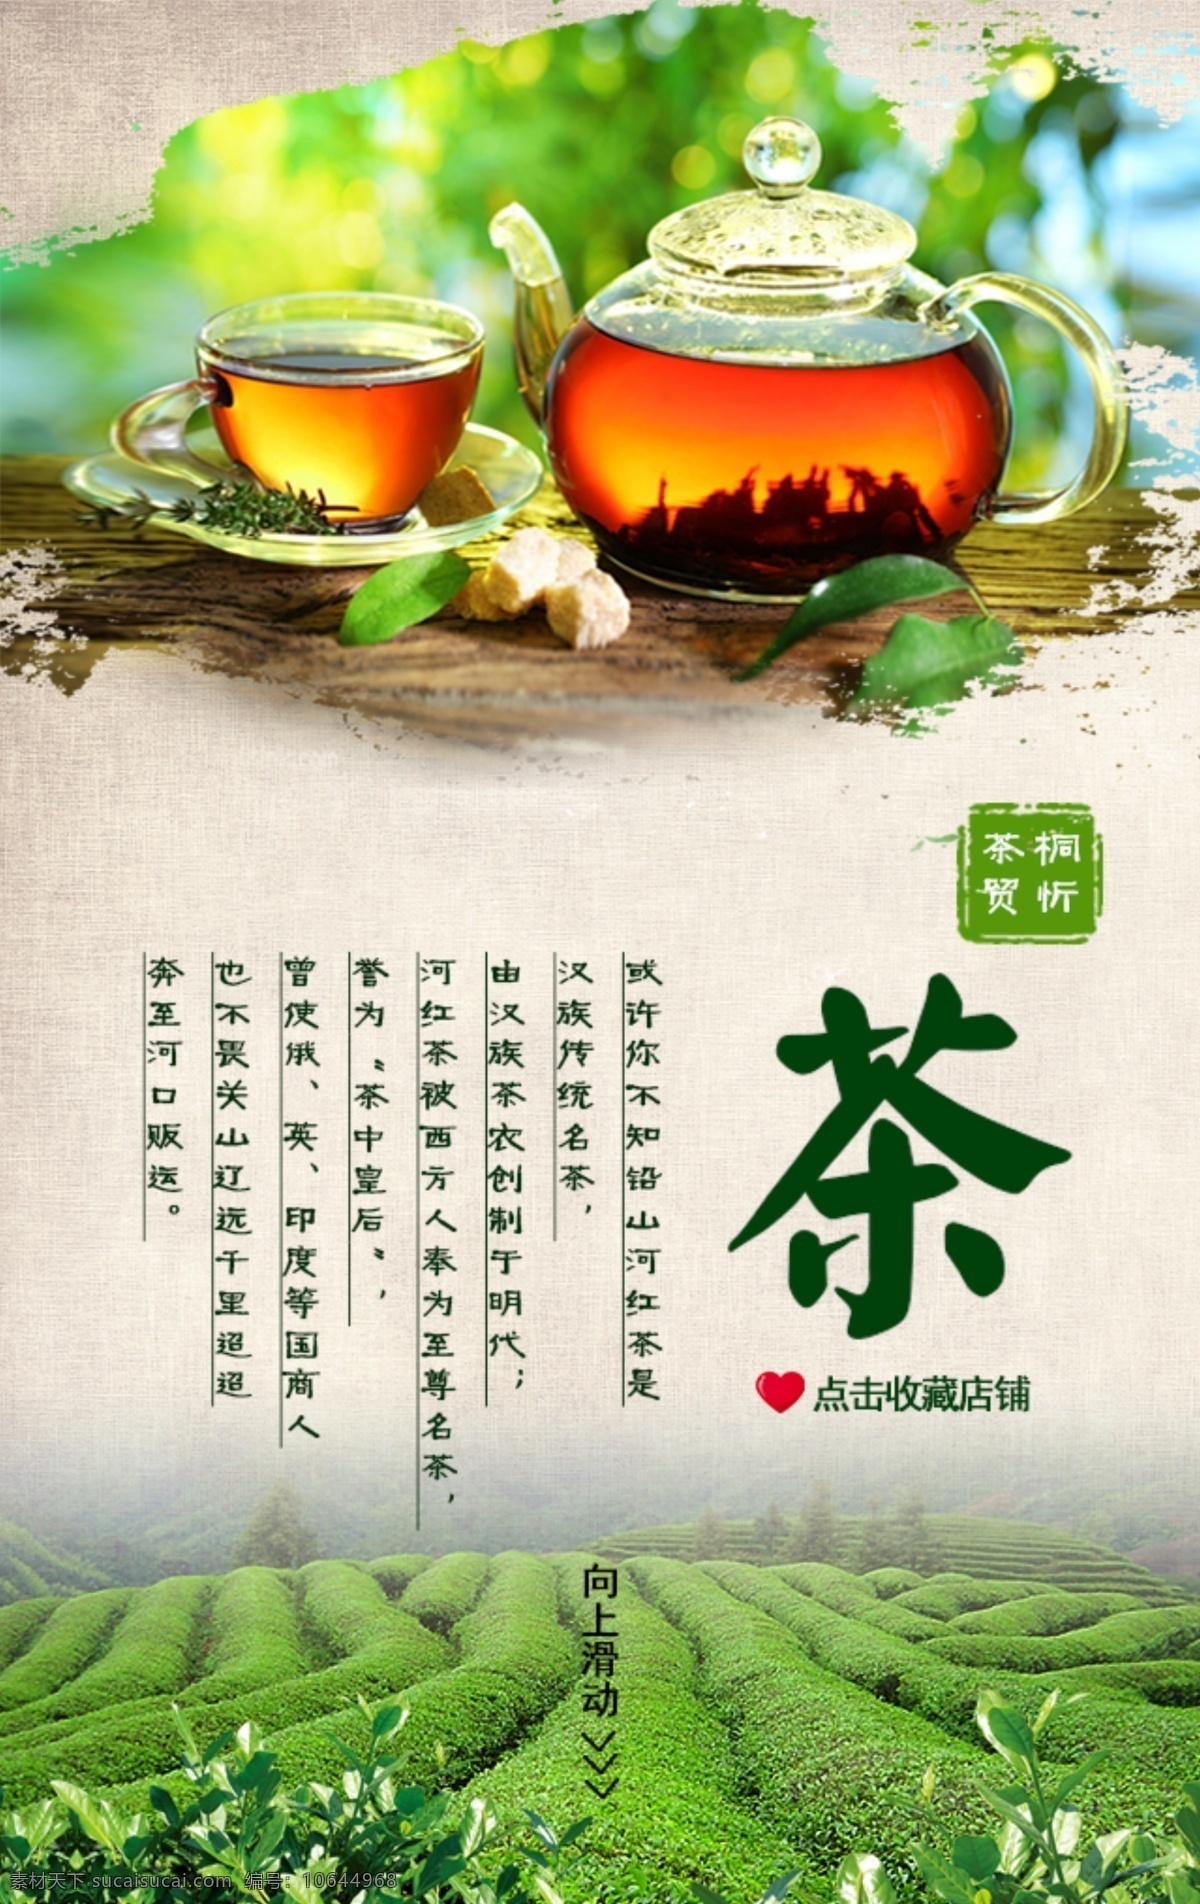 茶叶 商城 海报 背景 图 绿色 首页 头图 背景图 点击收藏 向上滑动 中国风